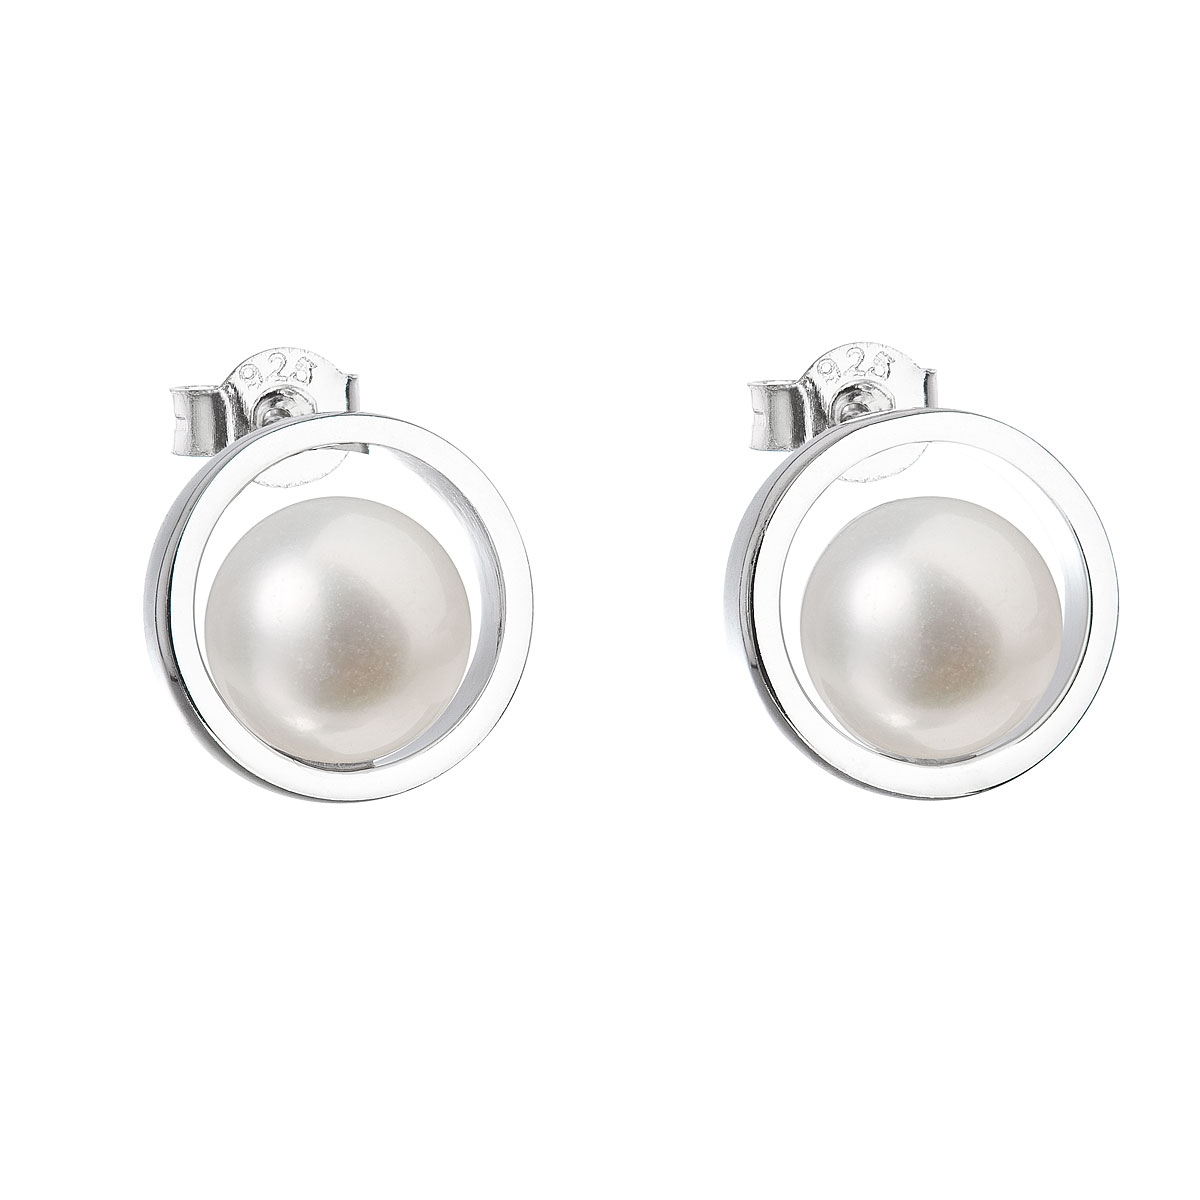 Strieborné náušnice kôstky s bielou riečnou perlou